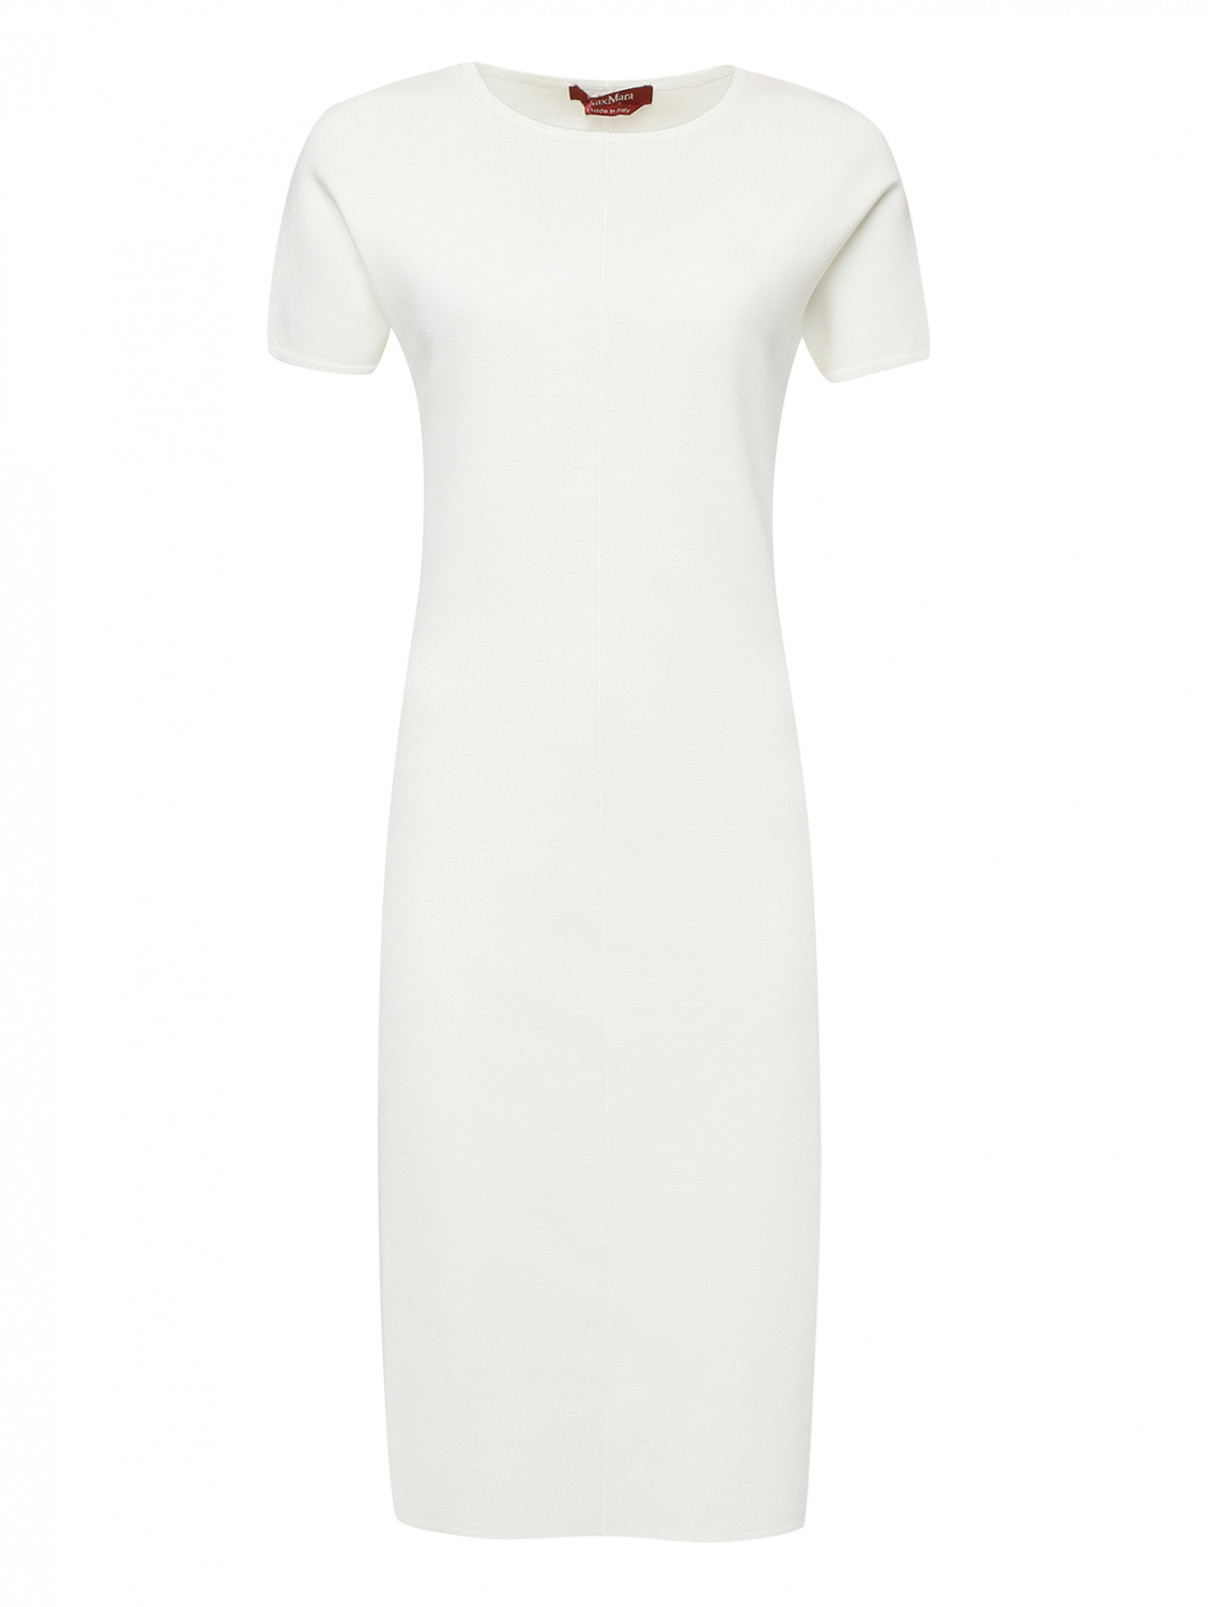 Платье трикотажное с короткими рукавами Max Mara  –  Общий вид  – Цвет:  Белый